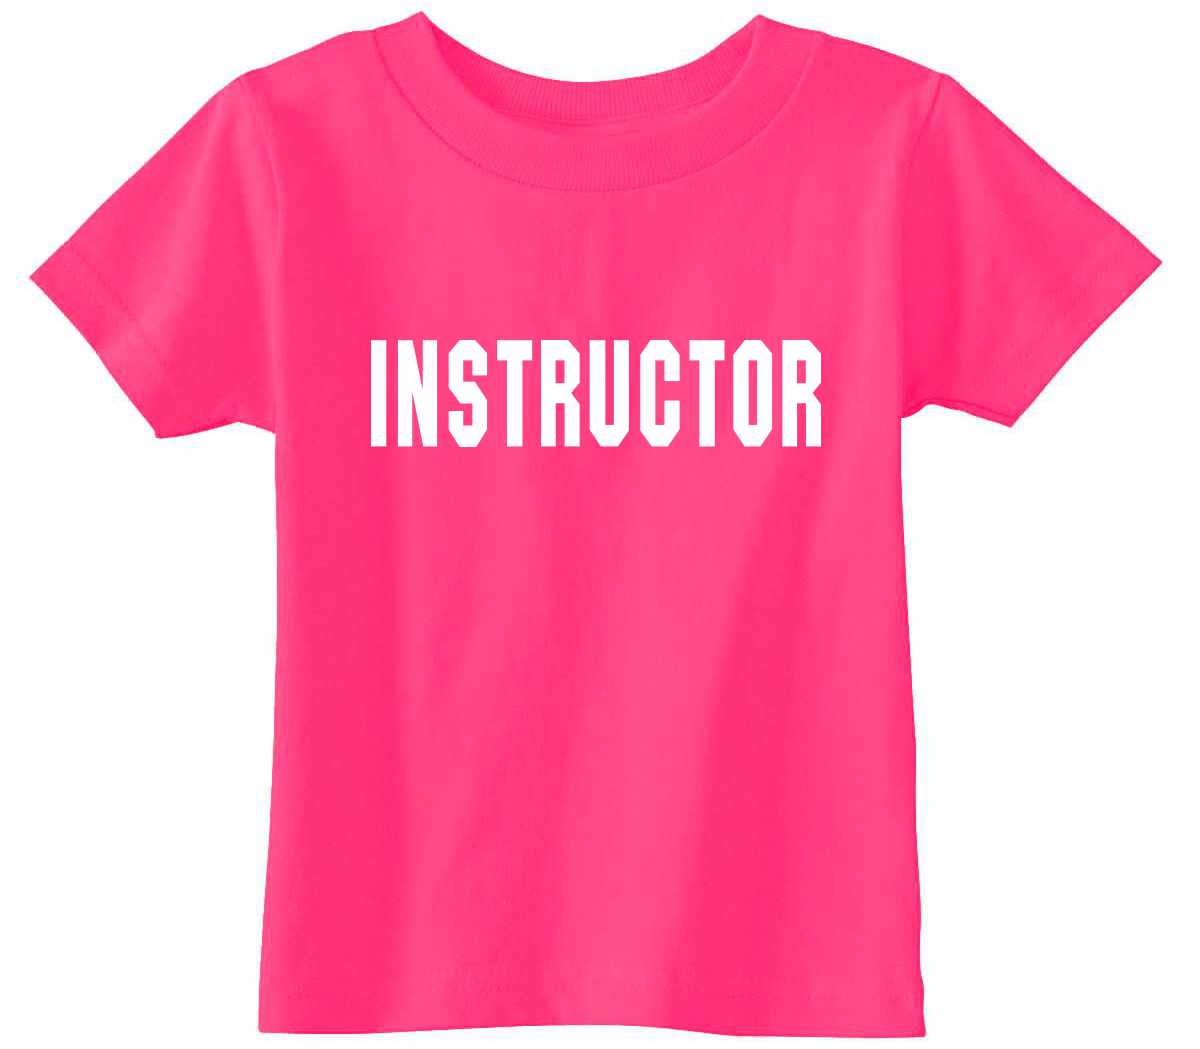 INSTRUCTOR on Infant-Toddler T-Shirt (#242-7)